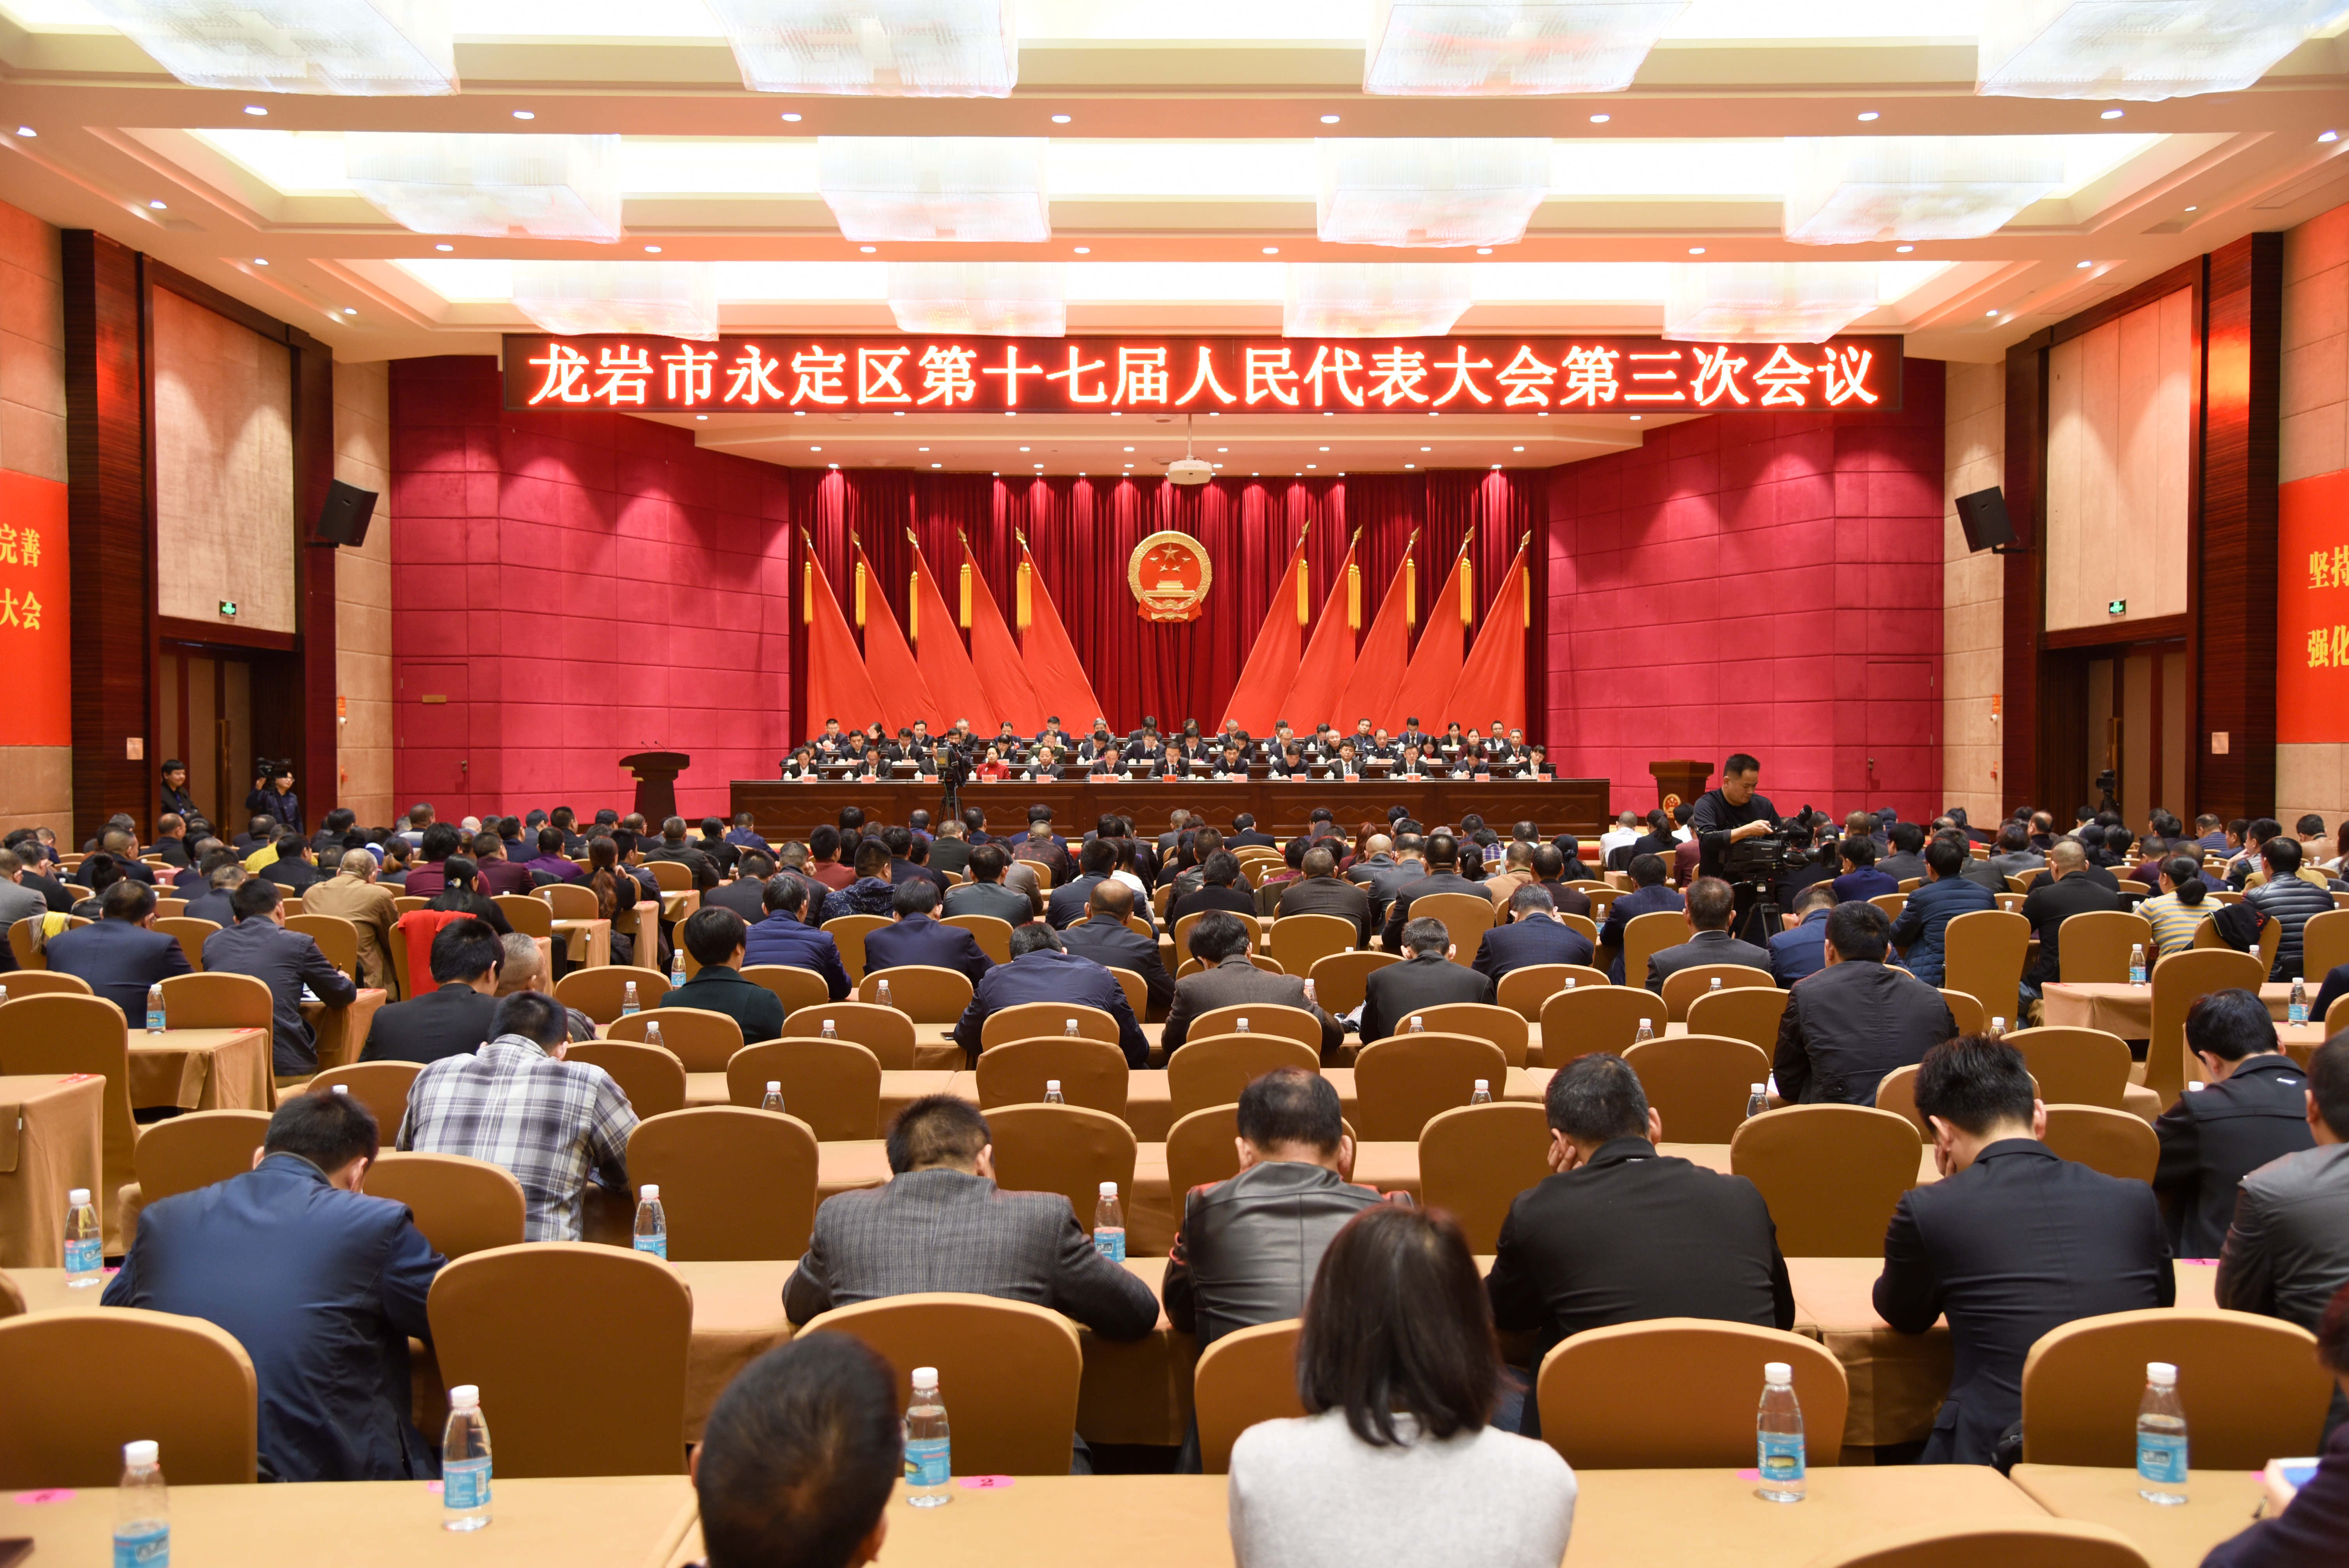 每日一词∣全国人民代表大会 the National People's Congress (NPC) - Chinadaily.com.cn